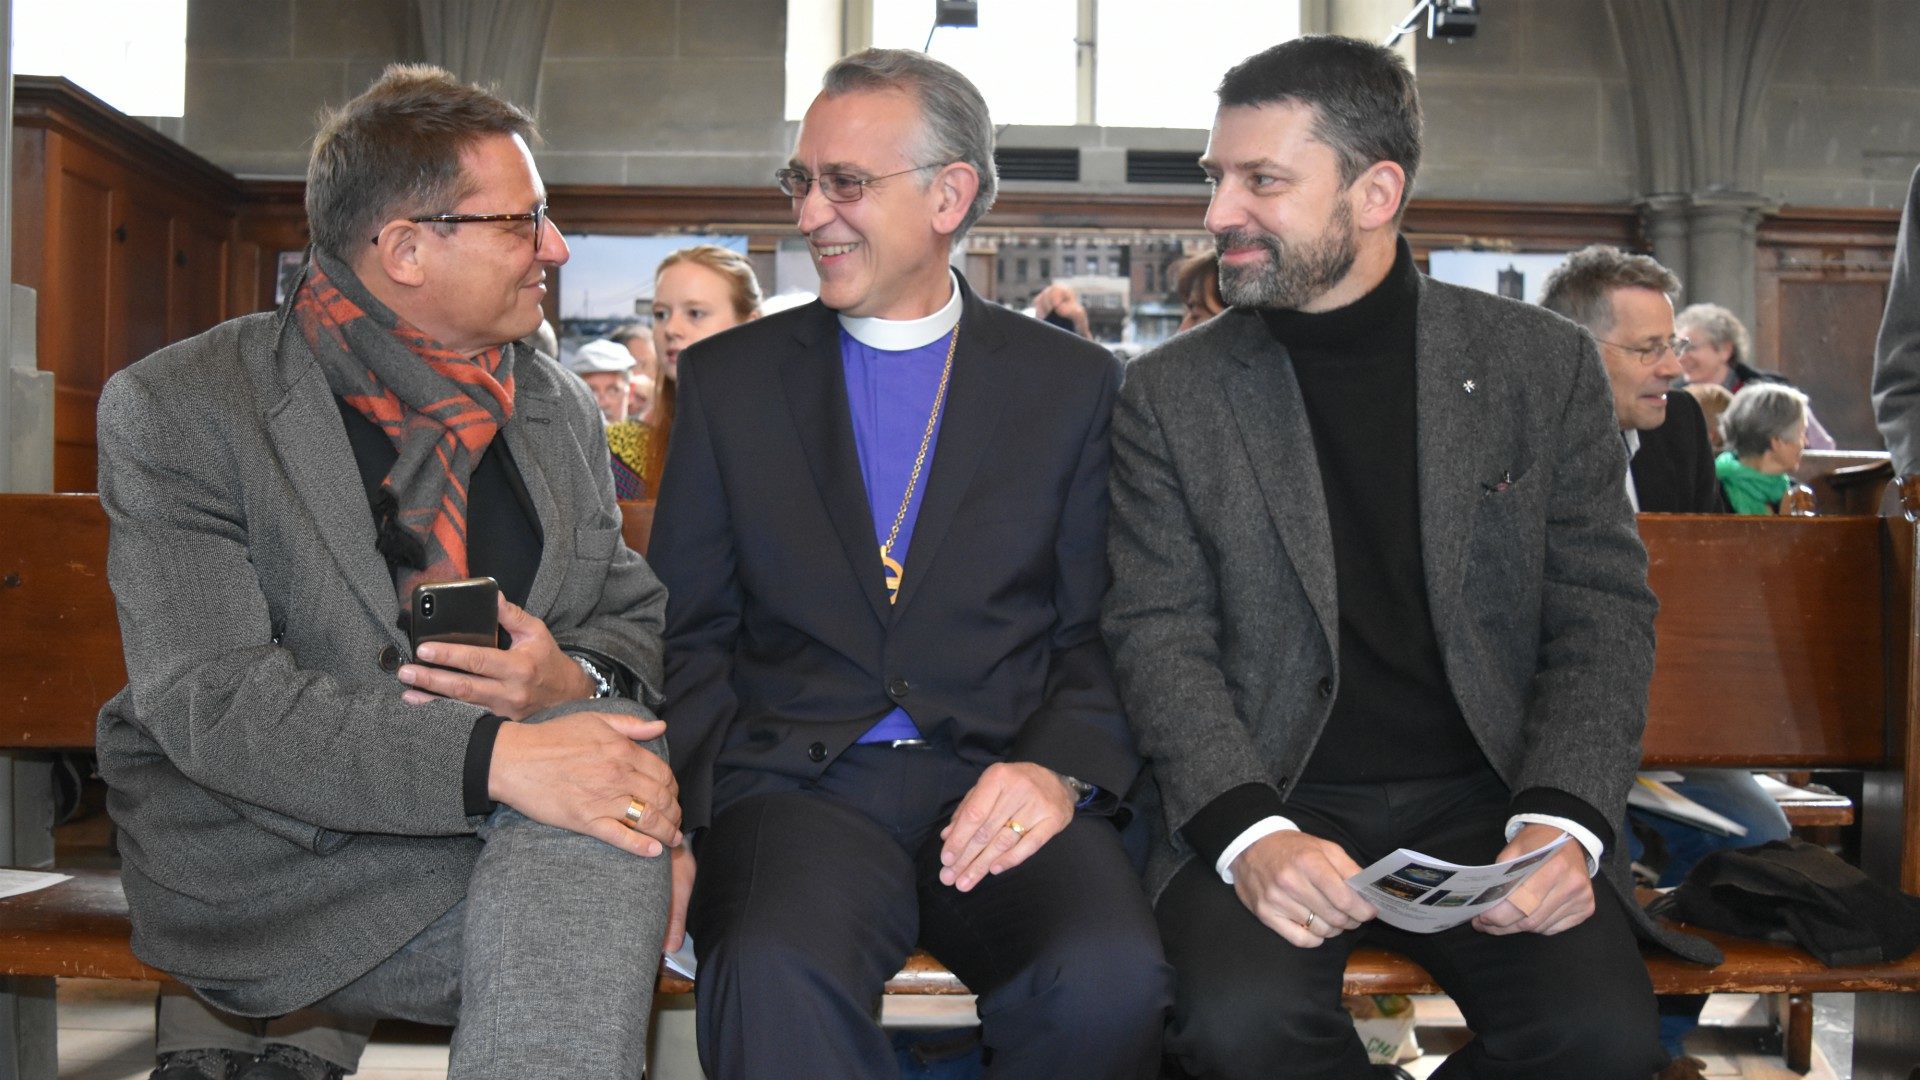 Mgr Felix Gmür, avec Mgr Harald Rein, président du Conseil suisse des religions (CSR), et Gottfried Locher, président de l'EERS | © Jacques Berset